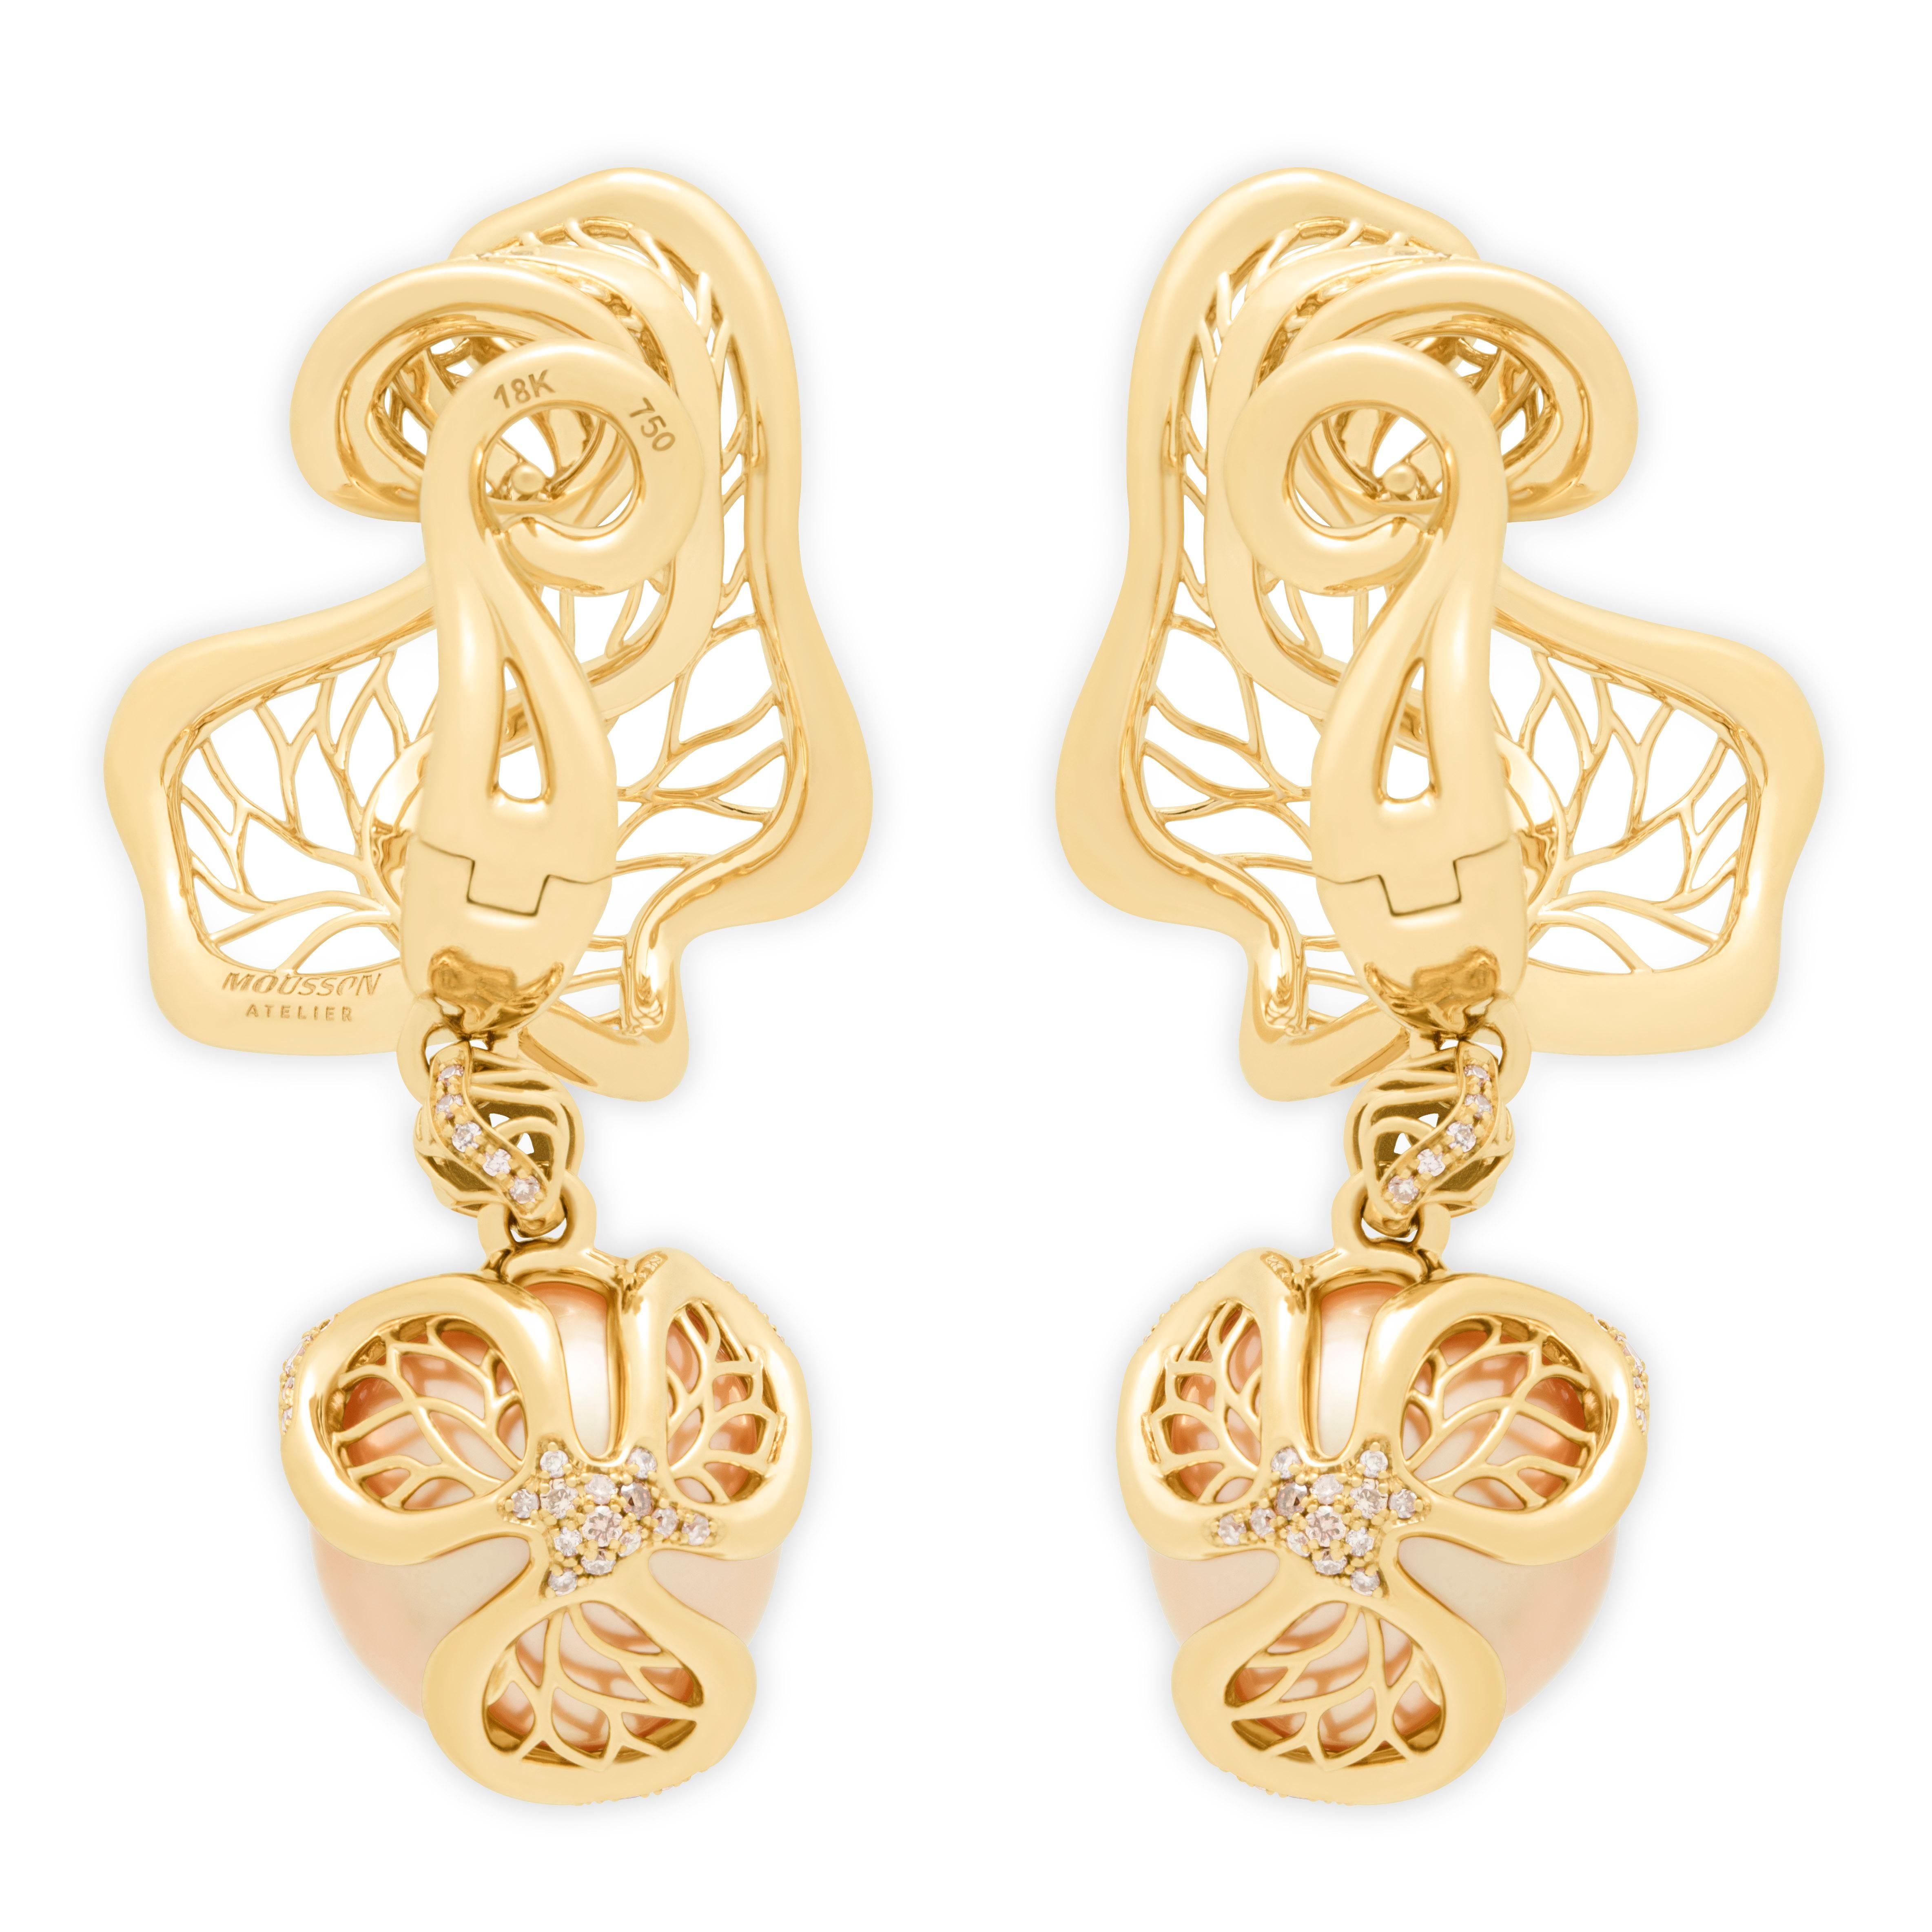 Goldene Südseeperle Brauner Diamant 18 Karat Gelbgold Winterkirsche Ohrringe
Beeindruckend große goldene Südseebirnen und champagnerfarbene Diamanten ergänzen sich in diesen Chandelier-Ohrringen. Wenn Sie eine Perlenliebhaberin sind, werden Sie